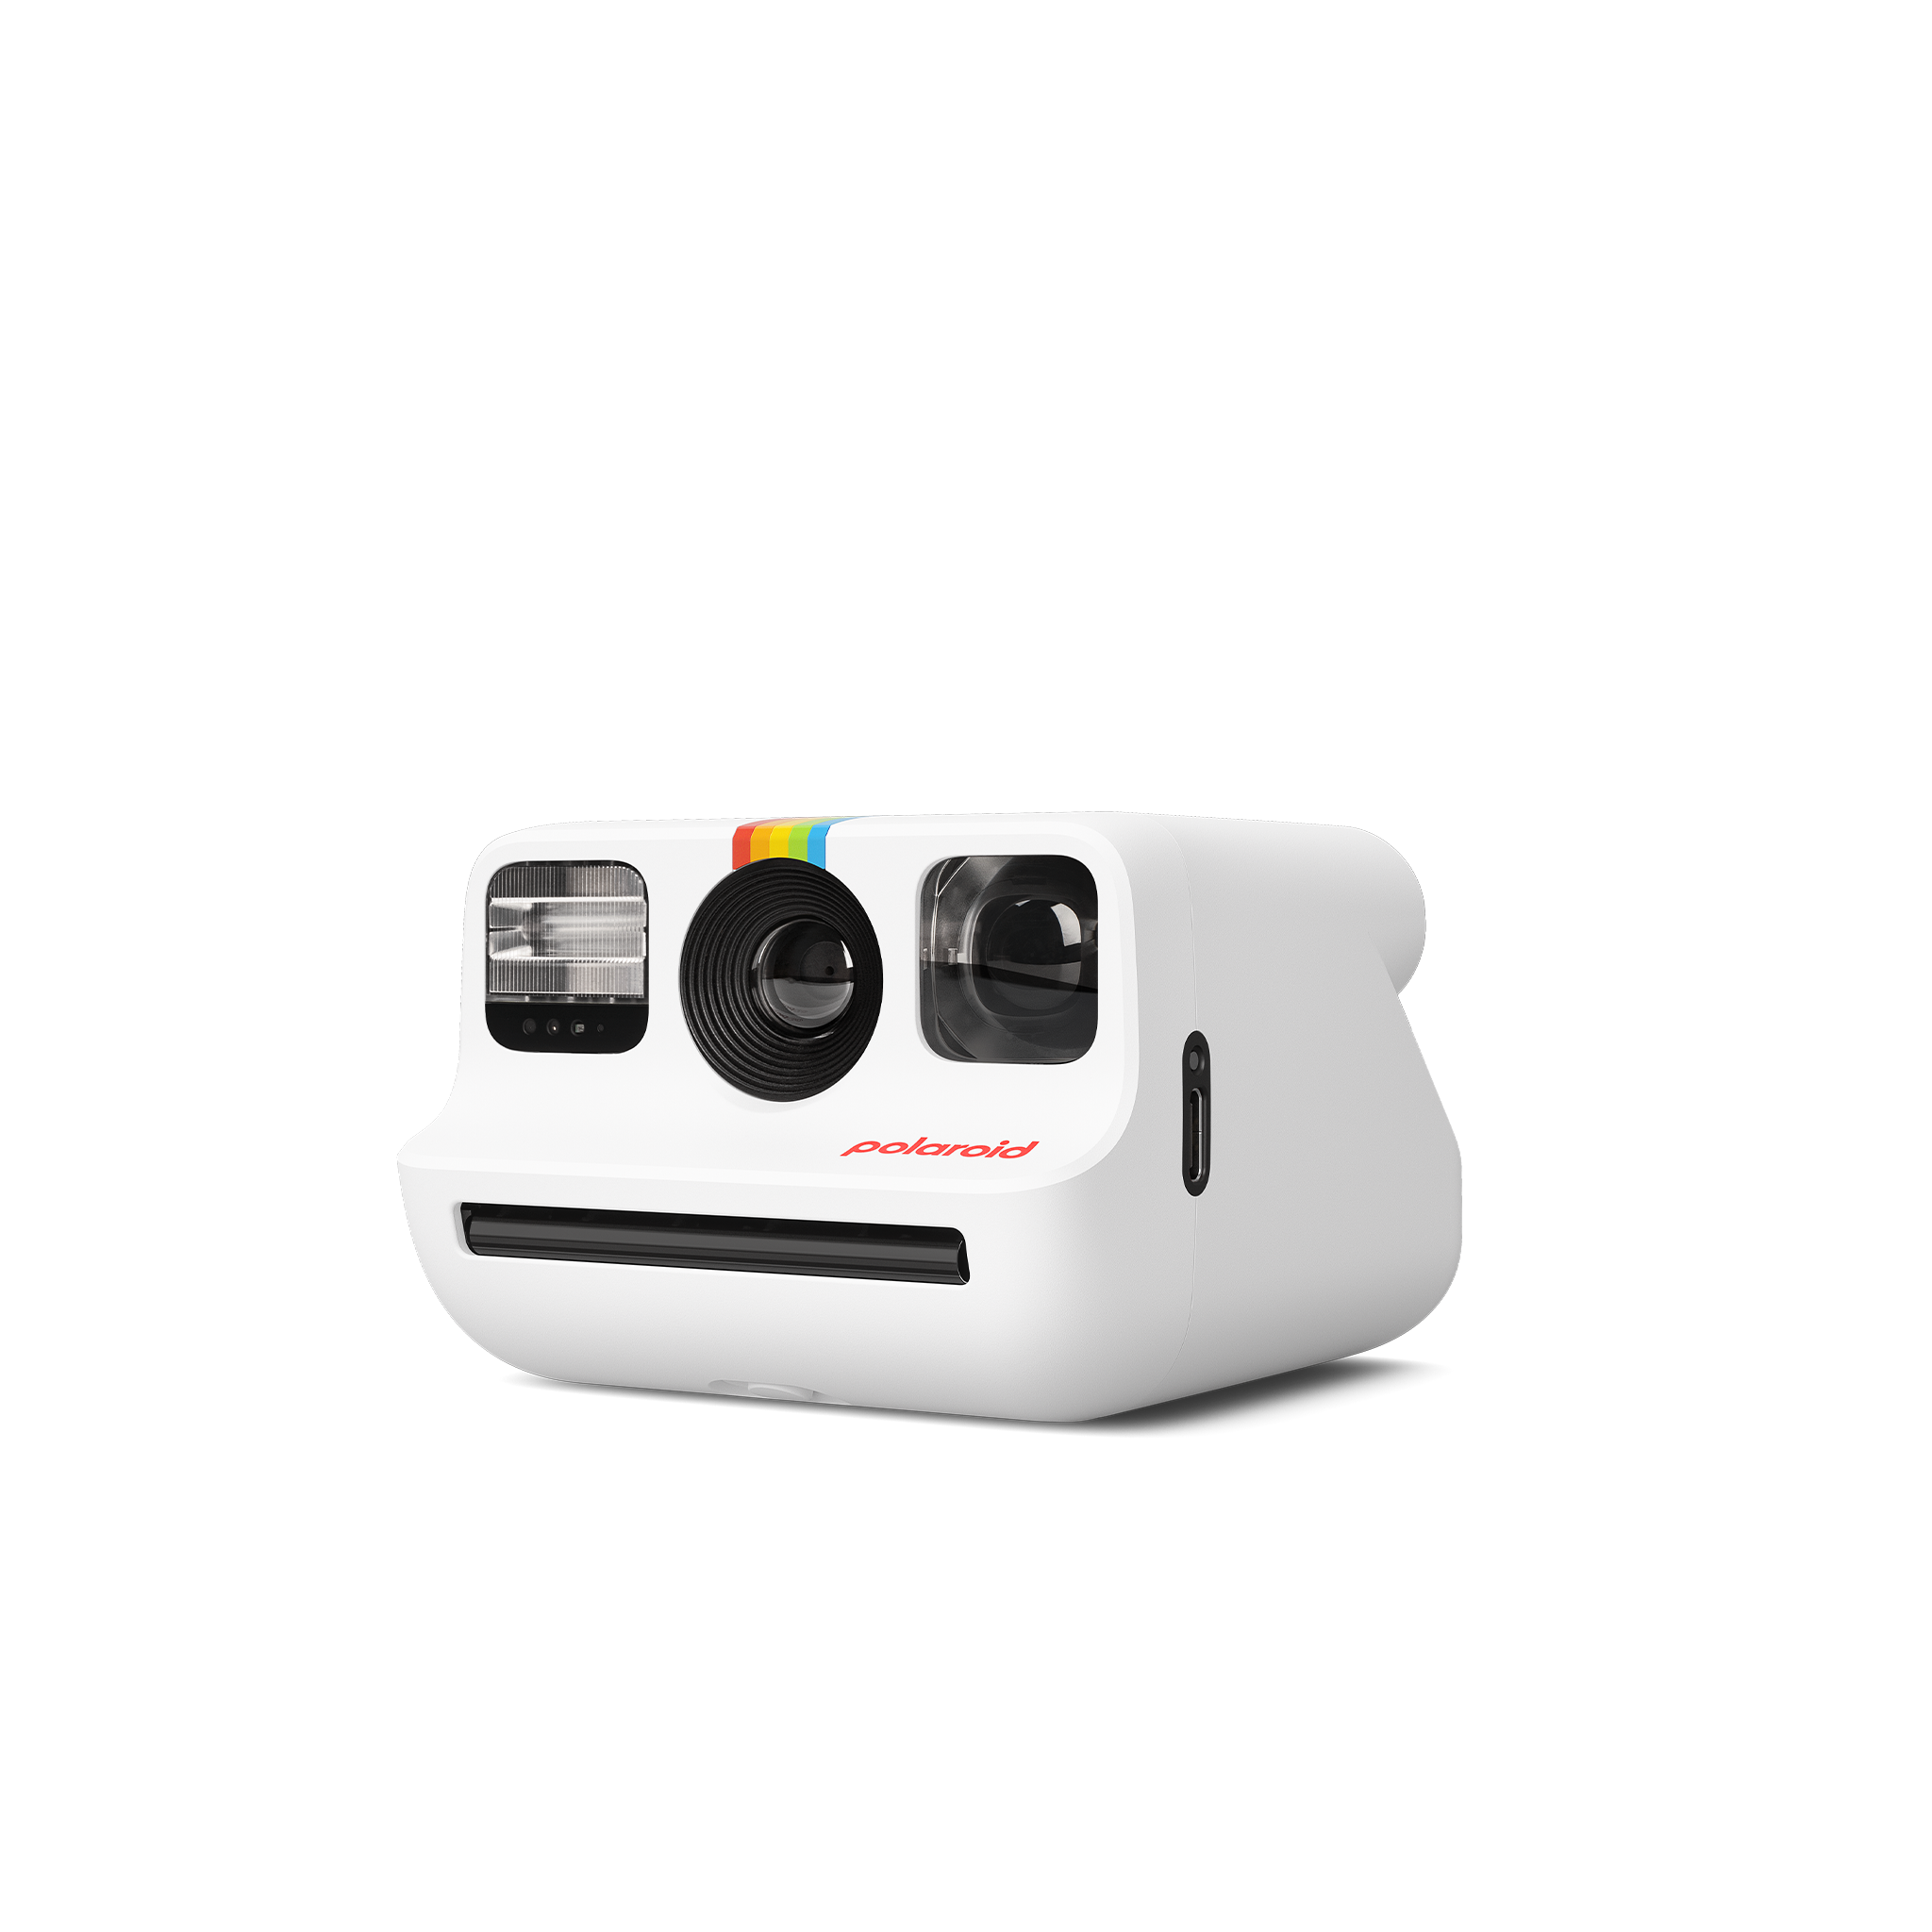 Polaroid Go Generation 2 Instant Film Camera (Red)